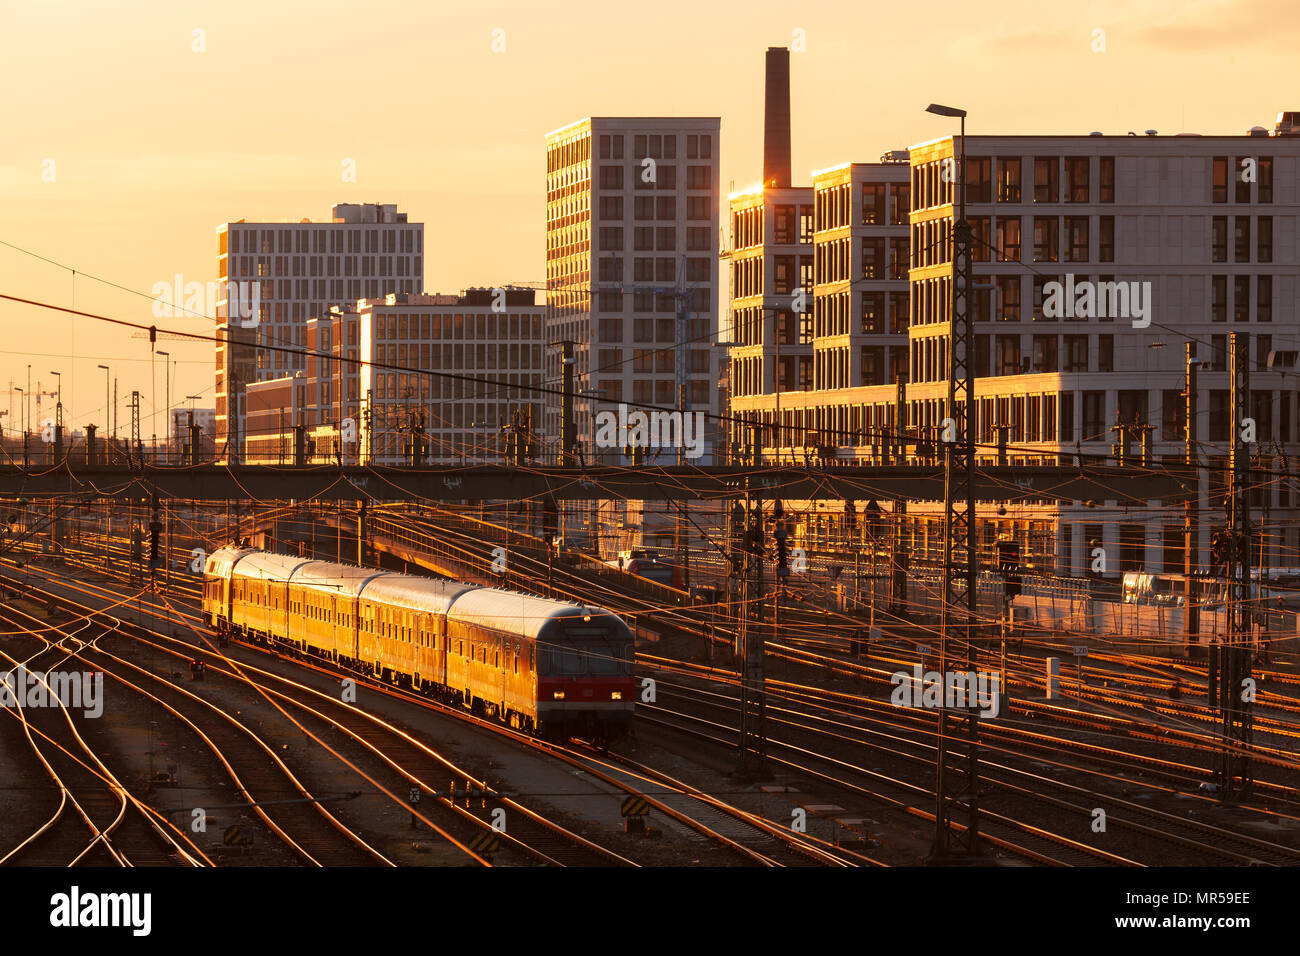 München/Deutschland: Track-Feld der Hauptbahnhof München mit modernen Gebäude im Hintergrund und einen Zug in den Vordergrund Stockfoto